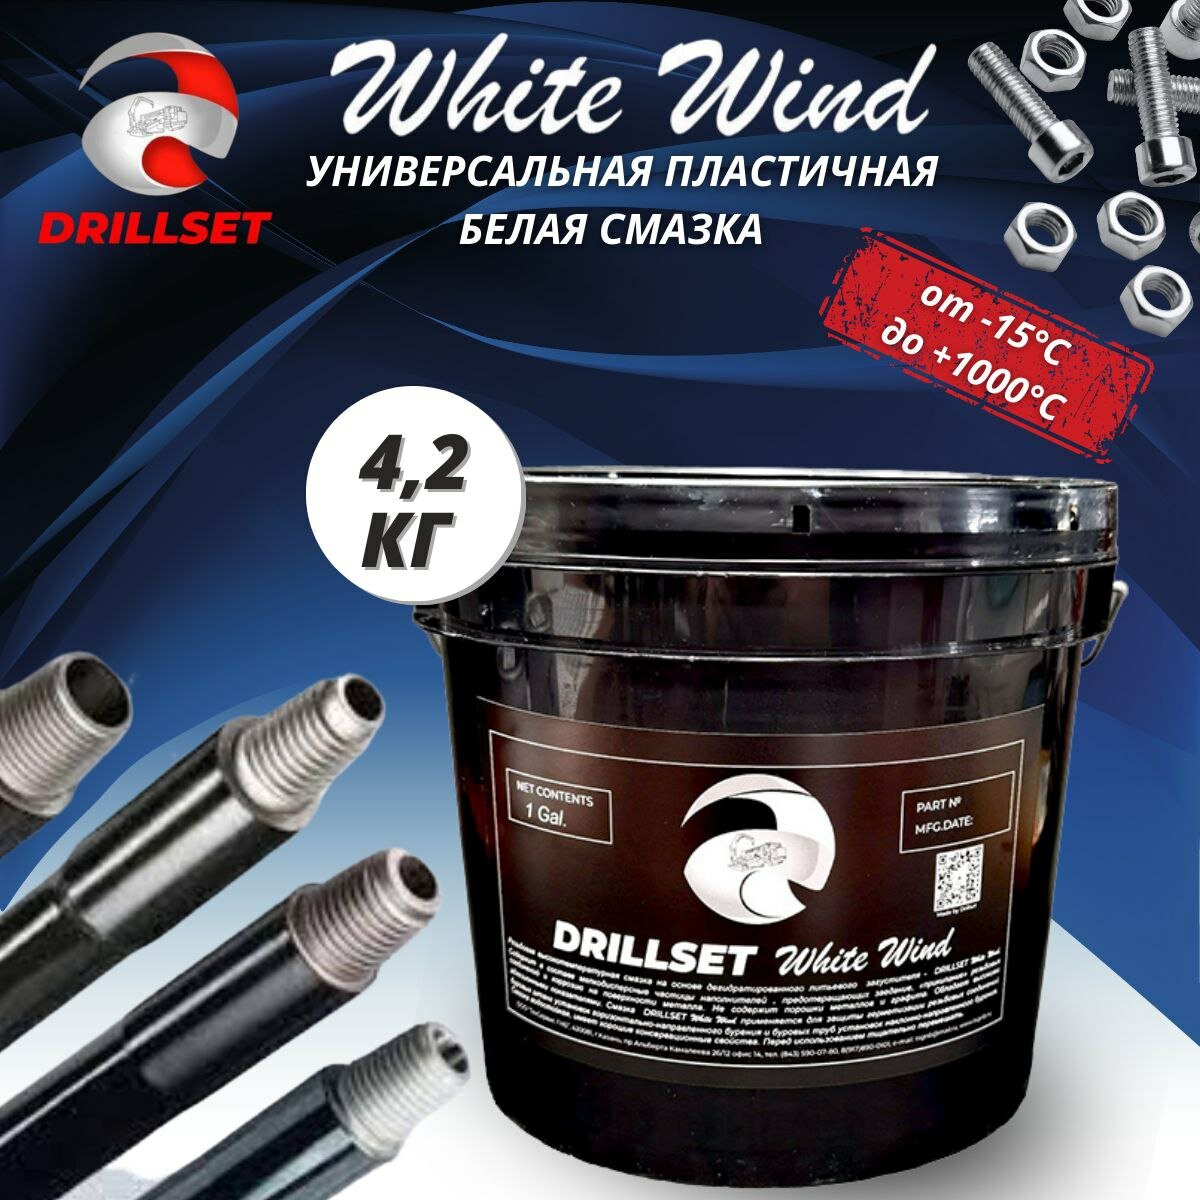 Универсальная пластичная белая смазка DRILLSET WHITE WIND 4,2.